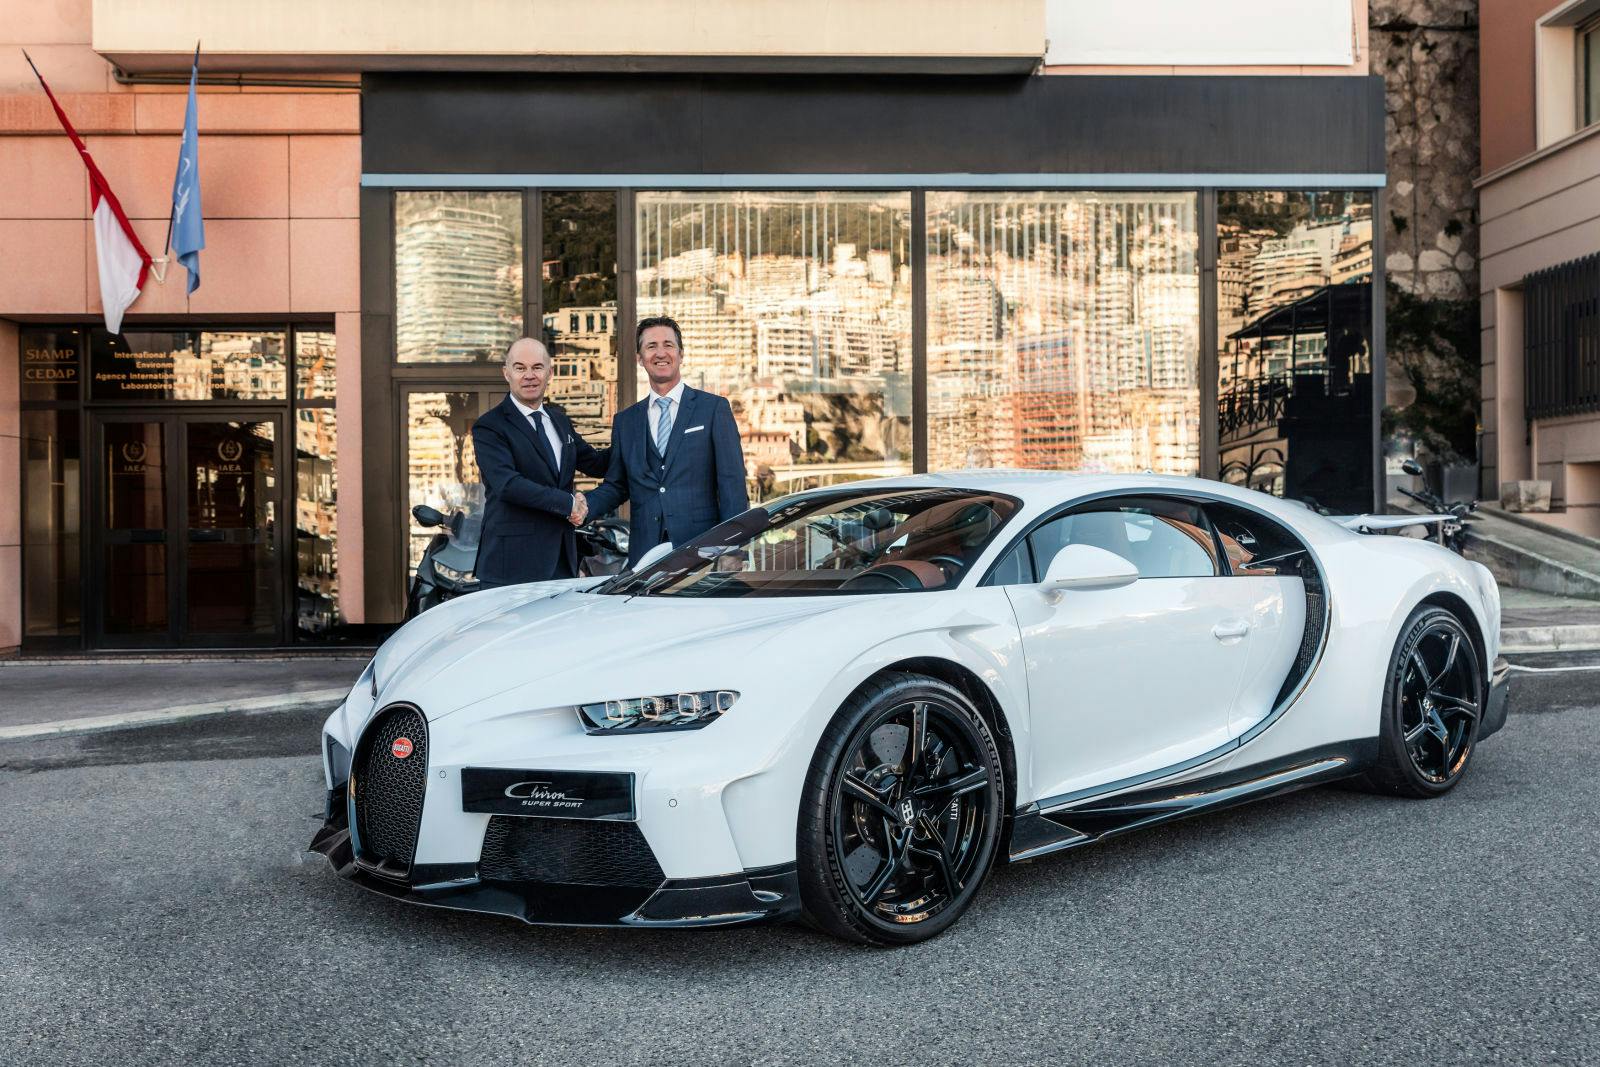 Guy Caquelin, Regional Director Europe bei Bugatti und Stéphane Colmart, Generaldirektor der Gruppe Segond Automobile mit dem Chiron Super Sport vor dem zukünftigen Bugatti Showroom in Monaco.